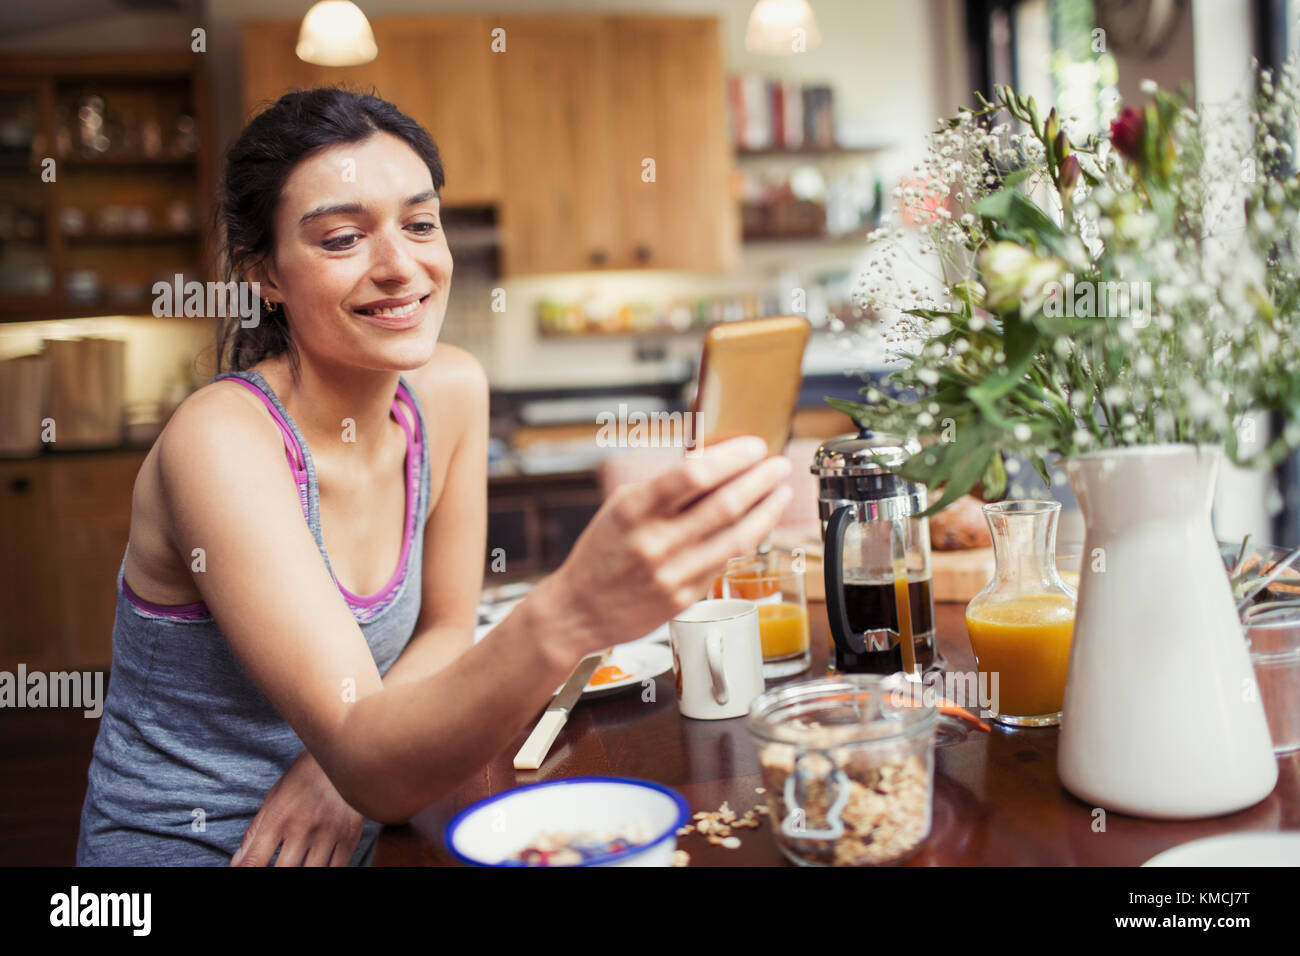 Lächelnde junge Frau, die mit einem Smartphone am Frühstückstisch SMS schreibt Stockfoto